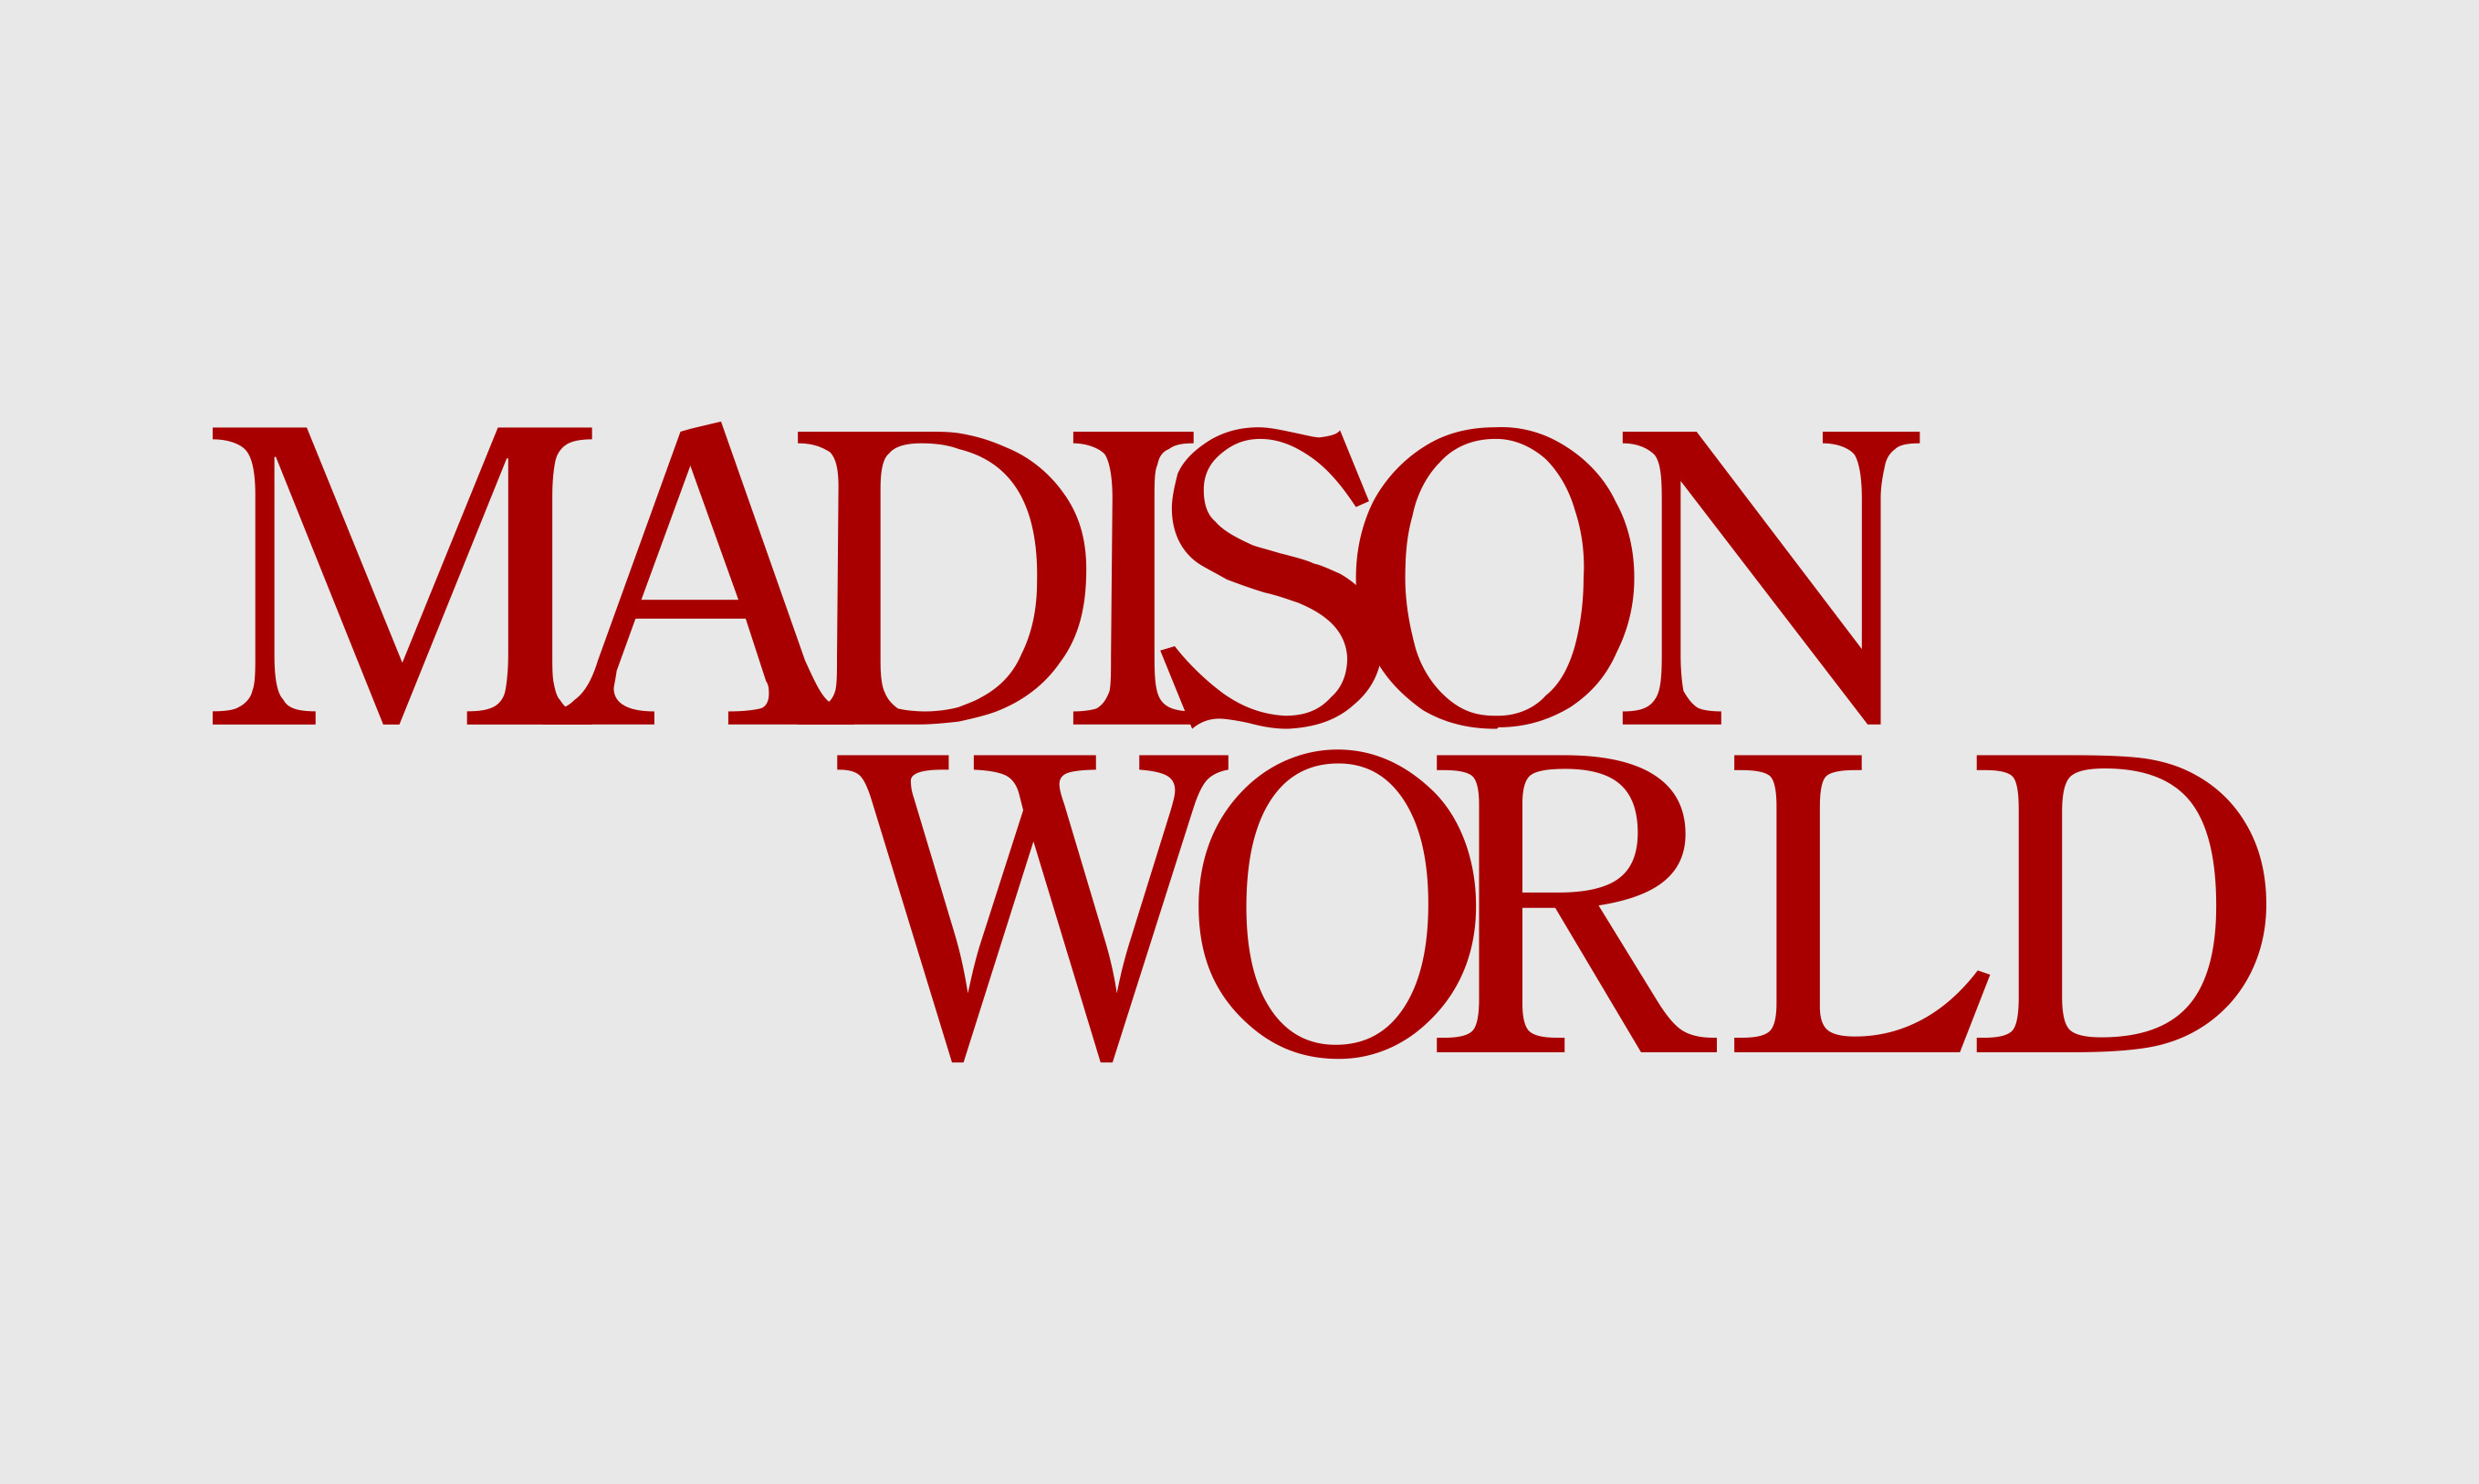 Madison world logo